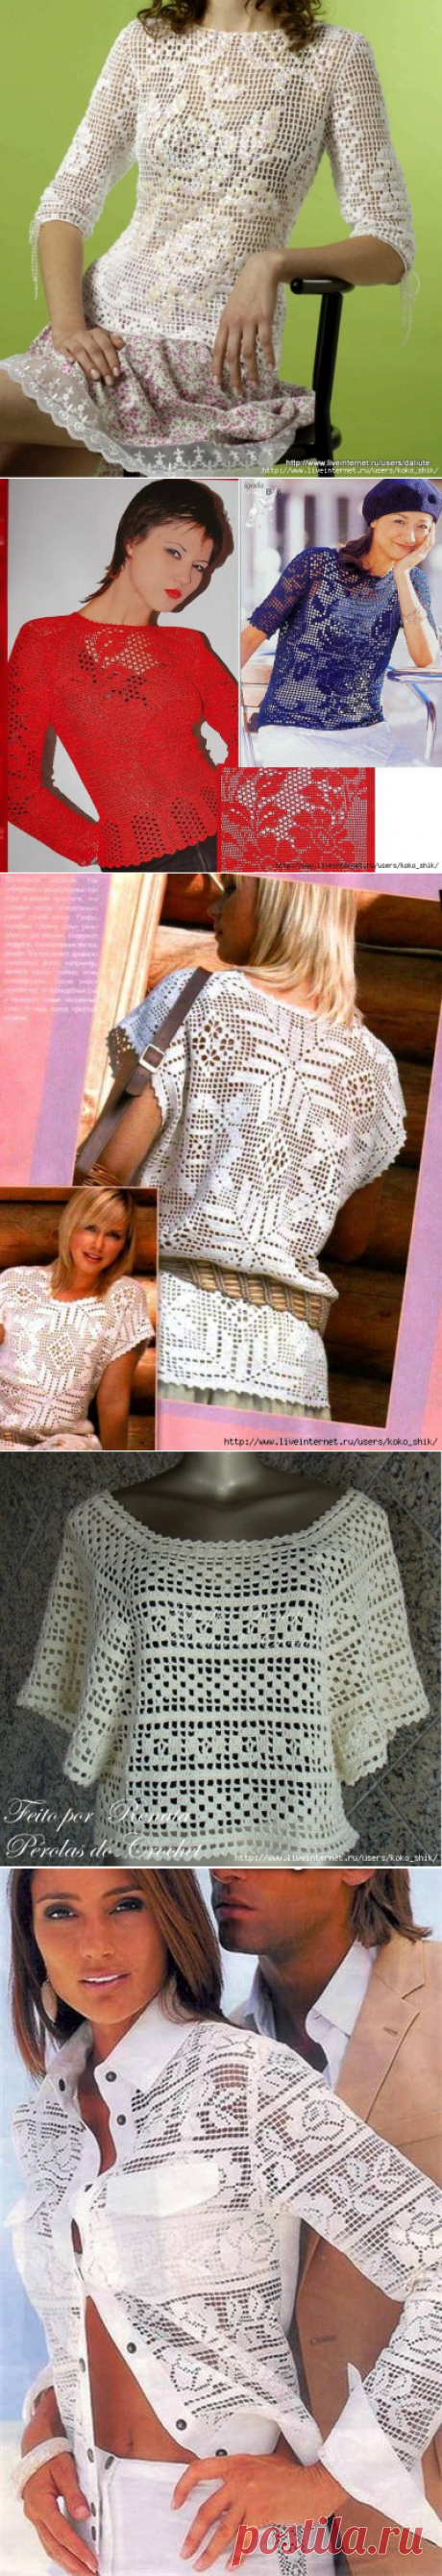 Вязание крючком - Филейное вязание - 12 моделей блузок и рубашек со схемами